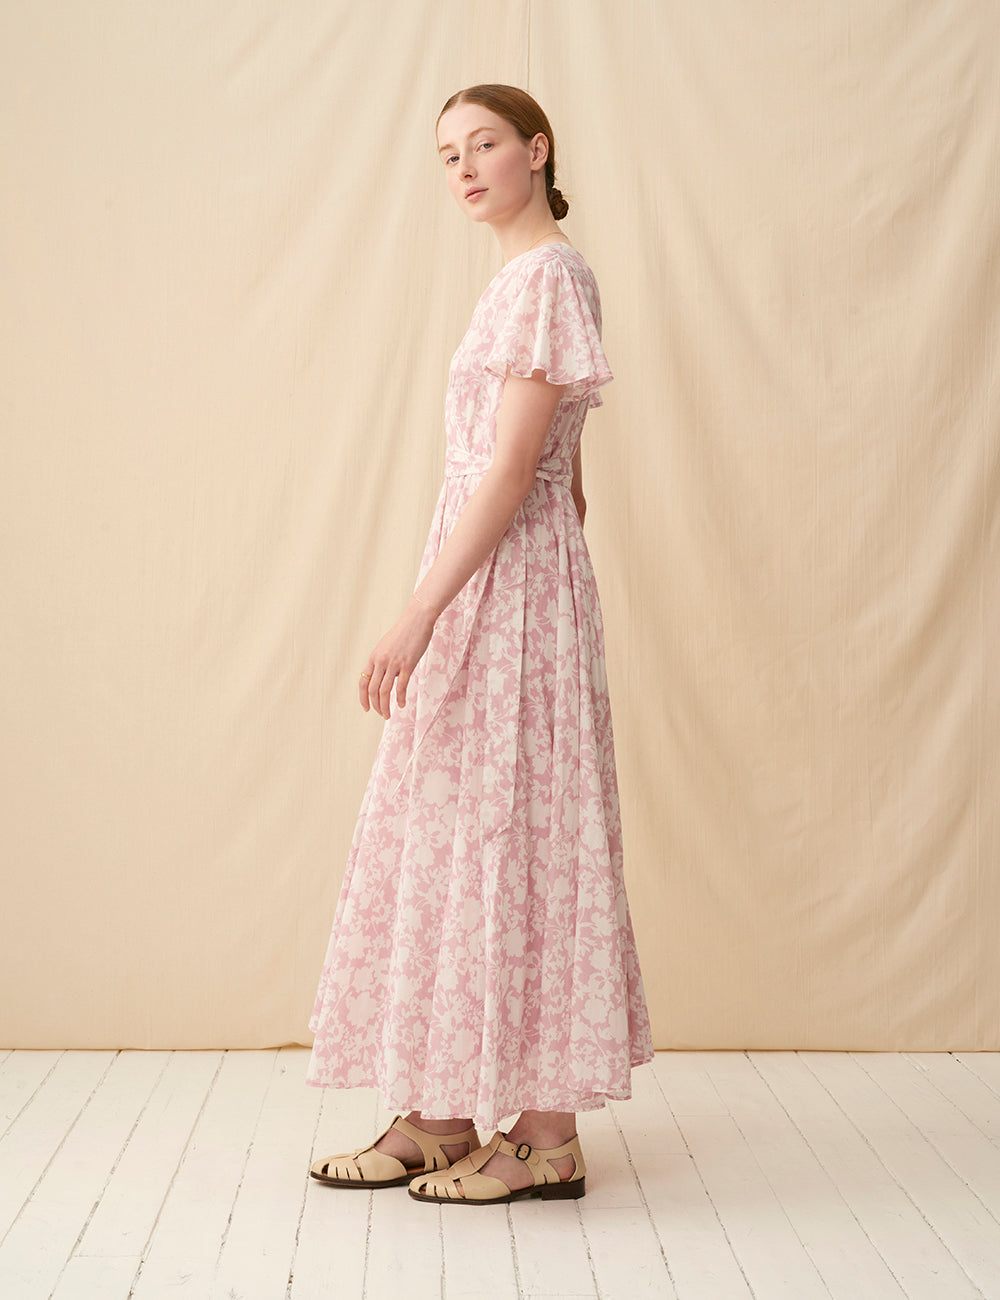 【予約】マドモアゼルのドレス(半袖) <br>Garden Shadows/Pink